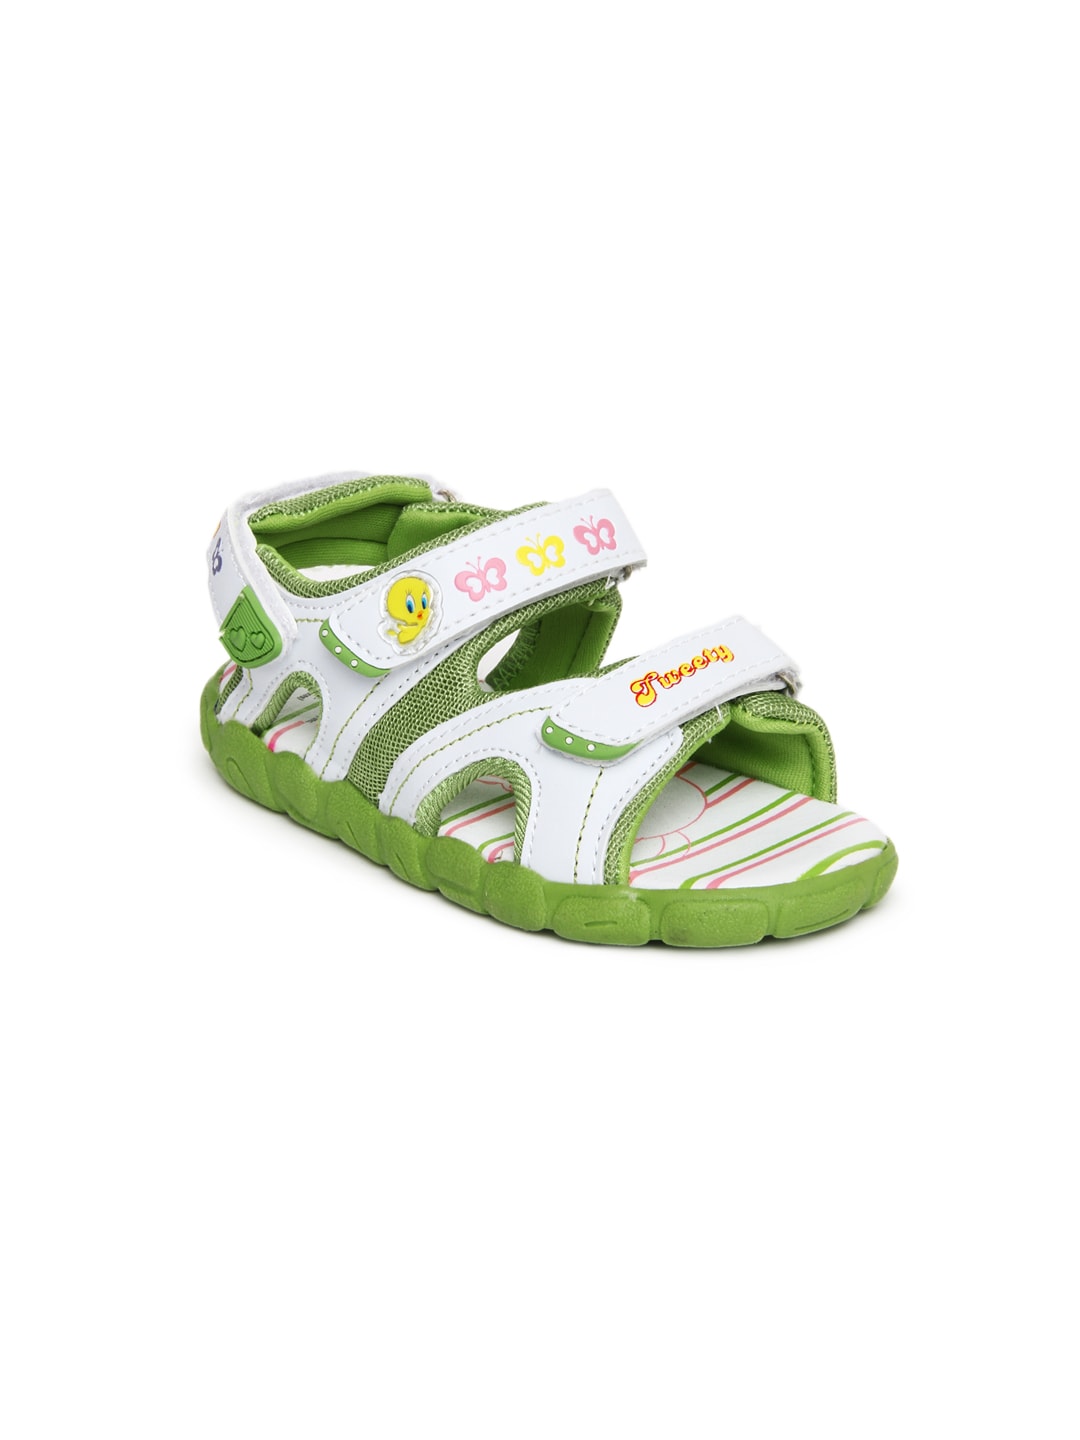 Warner Bros Kids White & Green Sports Sandals